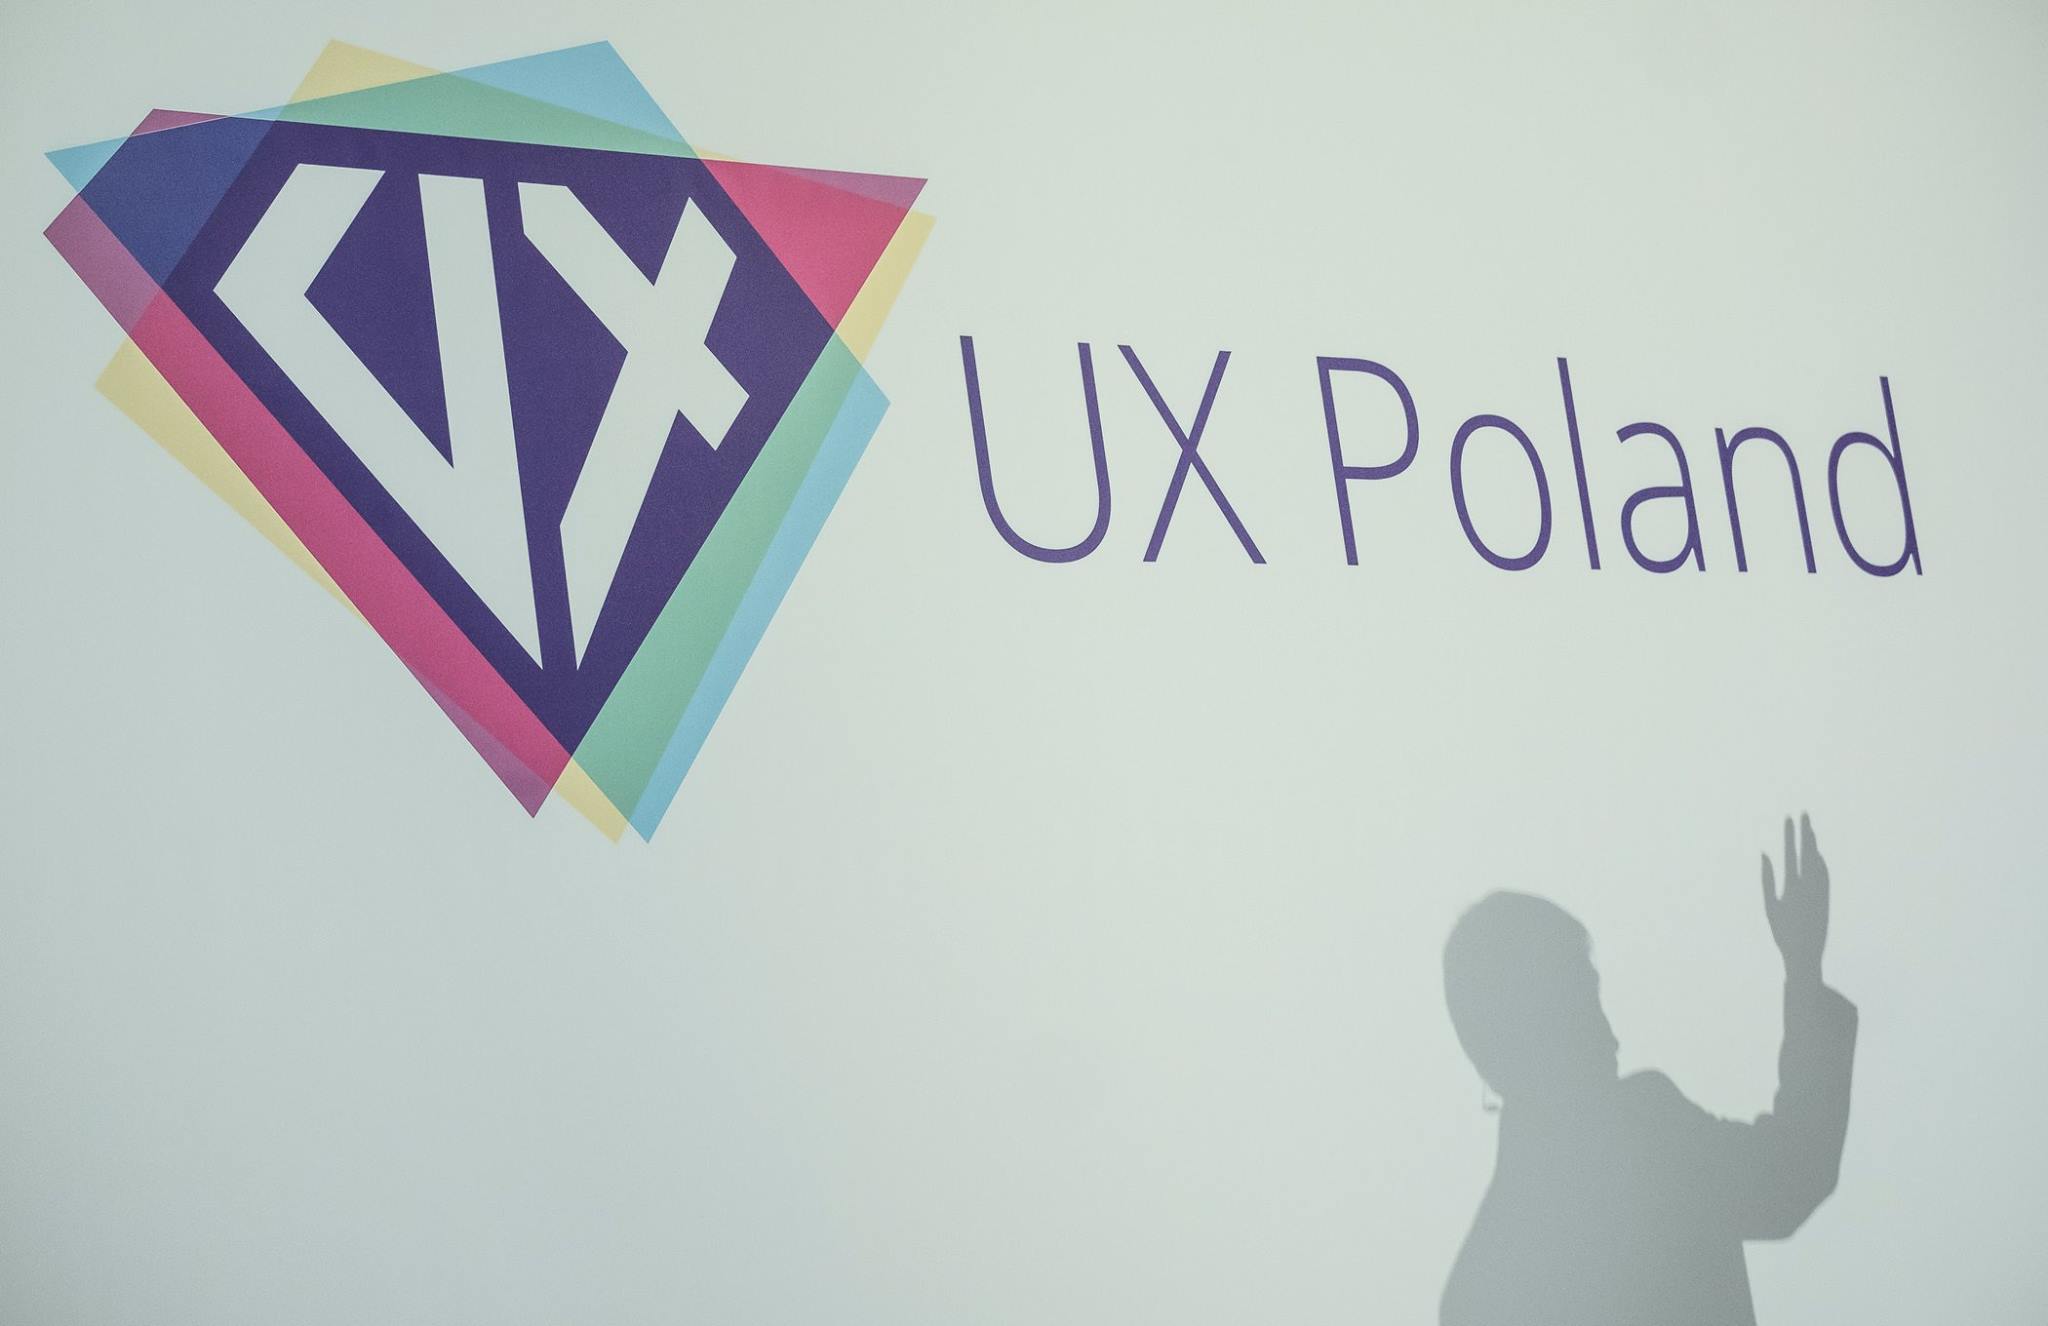 Czego spodziewać się po UX Poland?